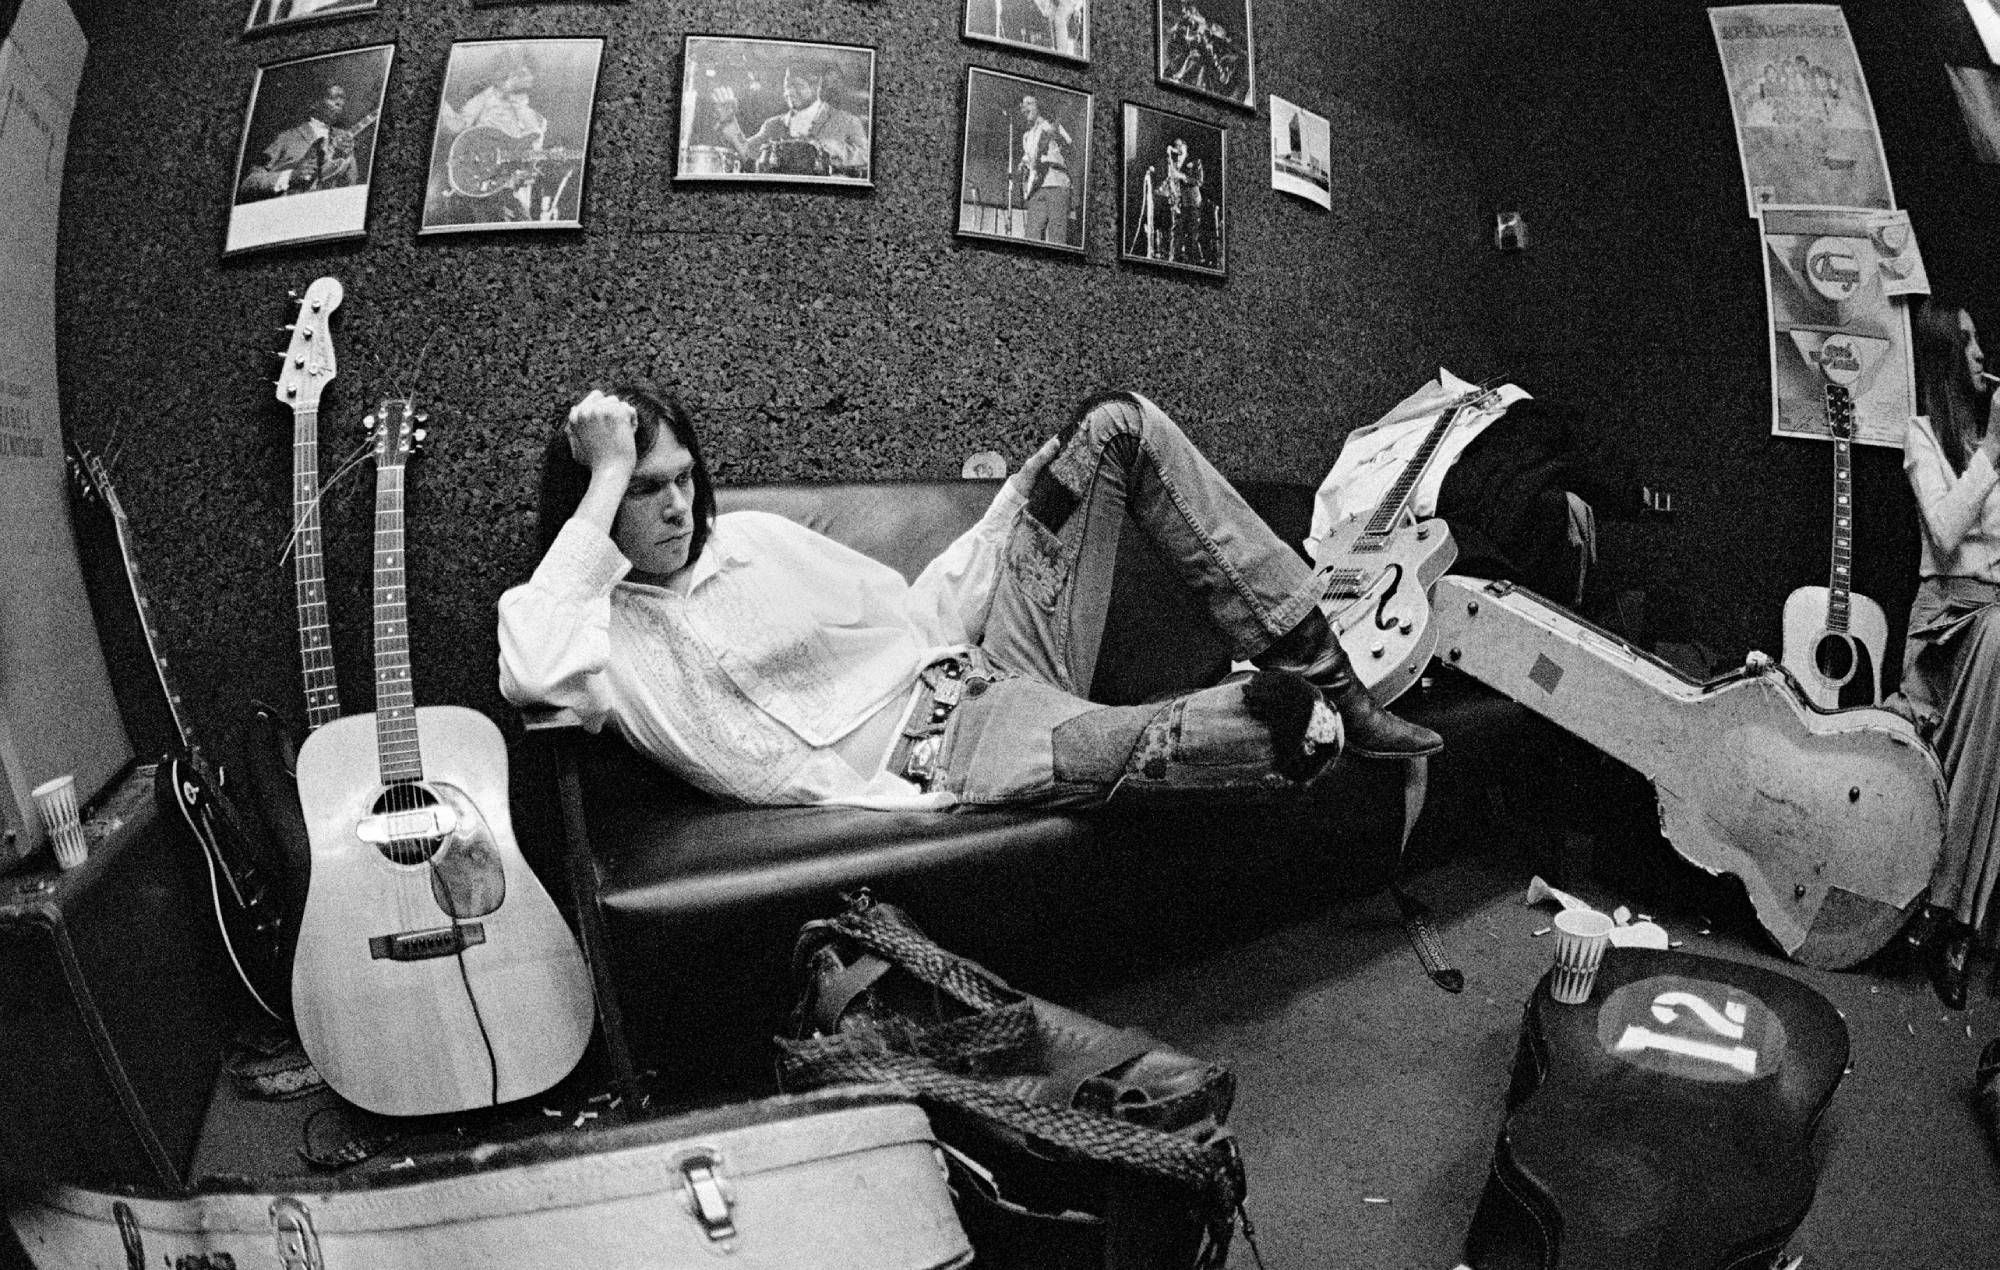 El documental "Harvest Time" de Neil Young se estrenará en diciembre